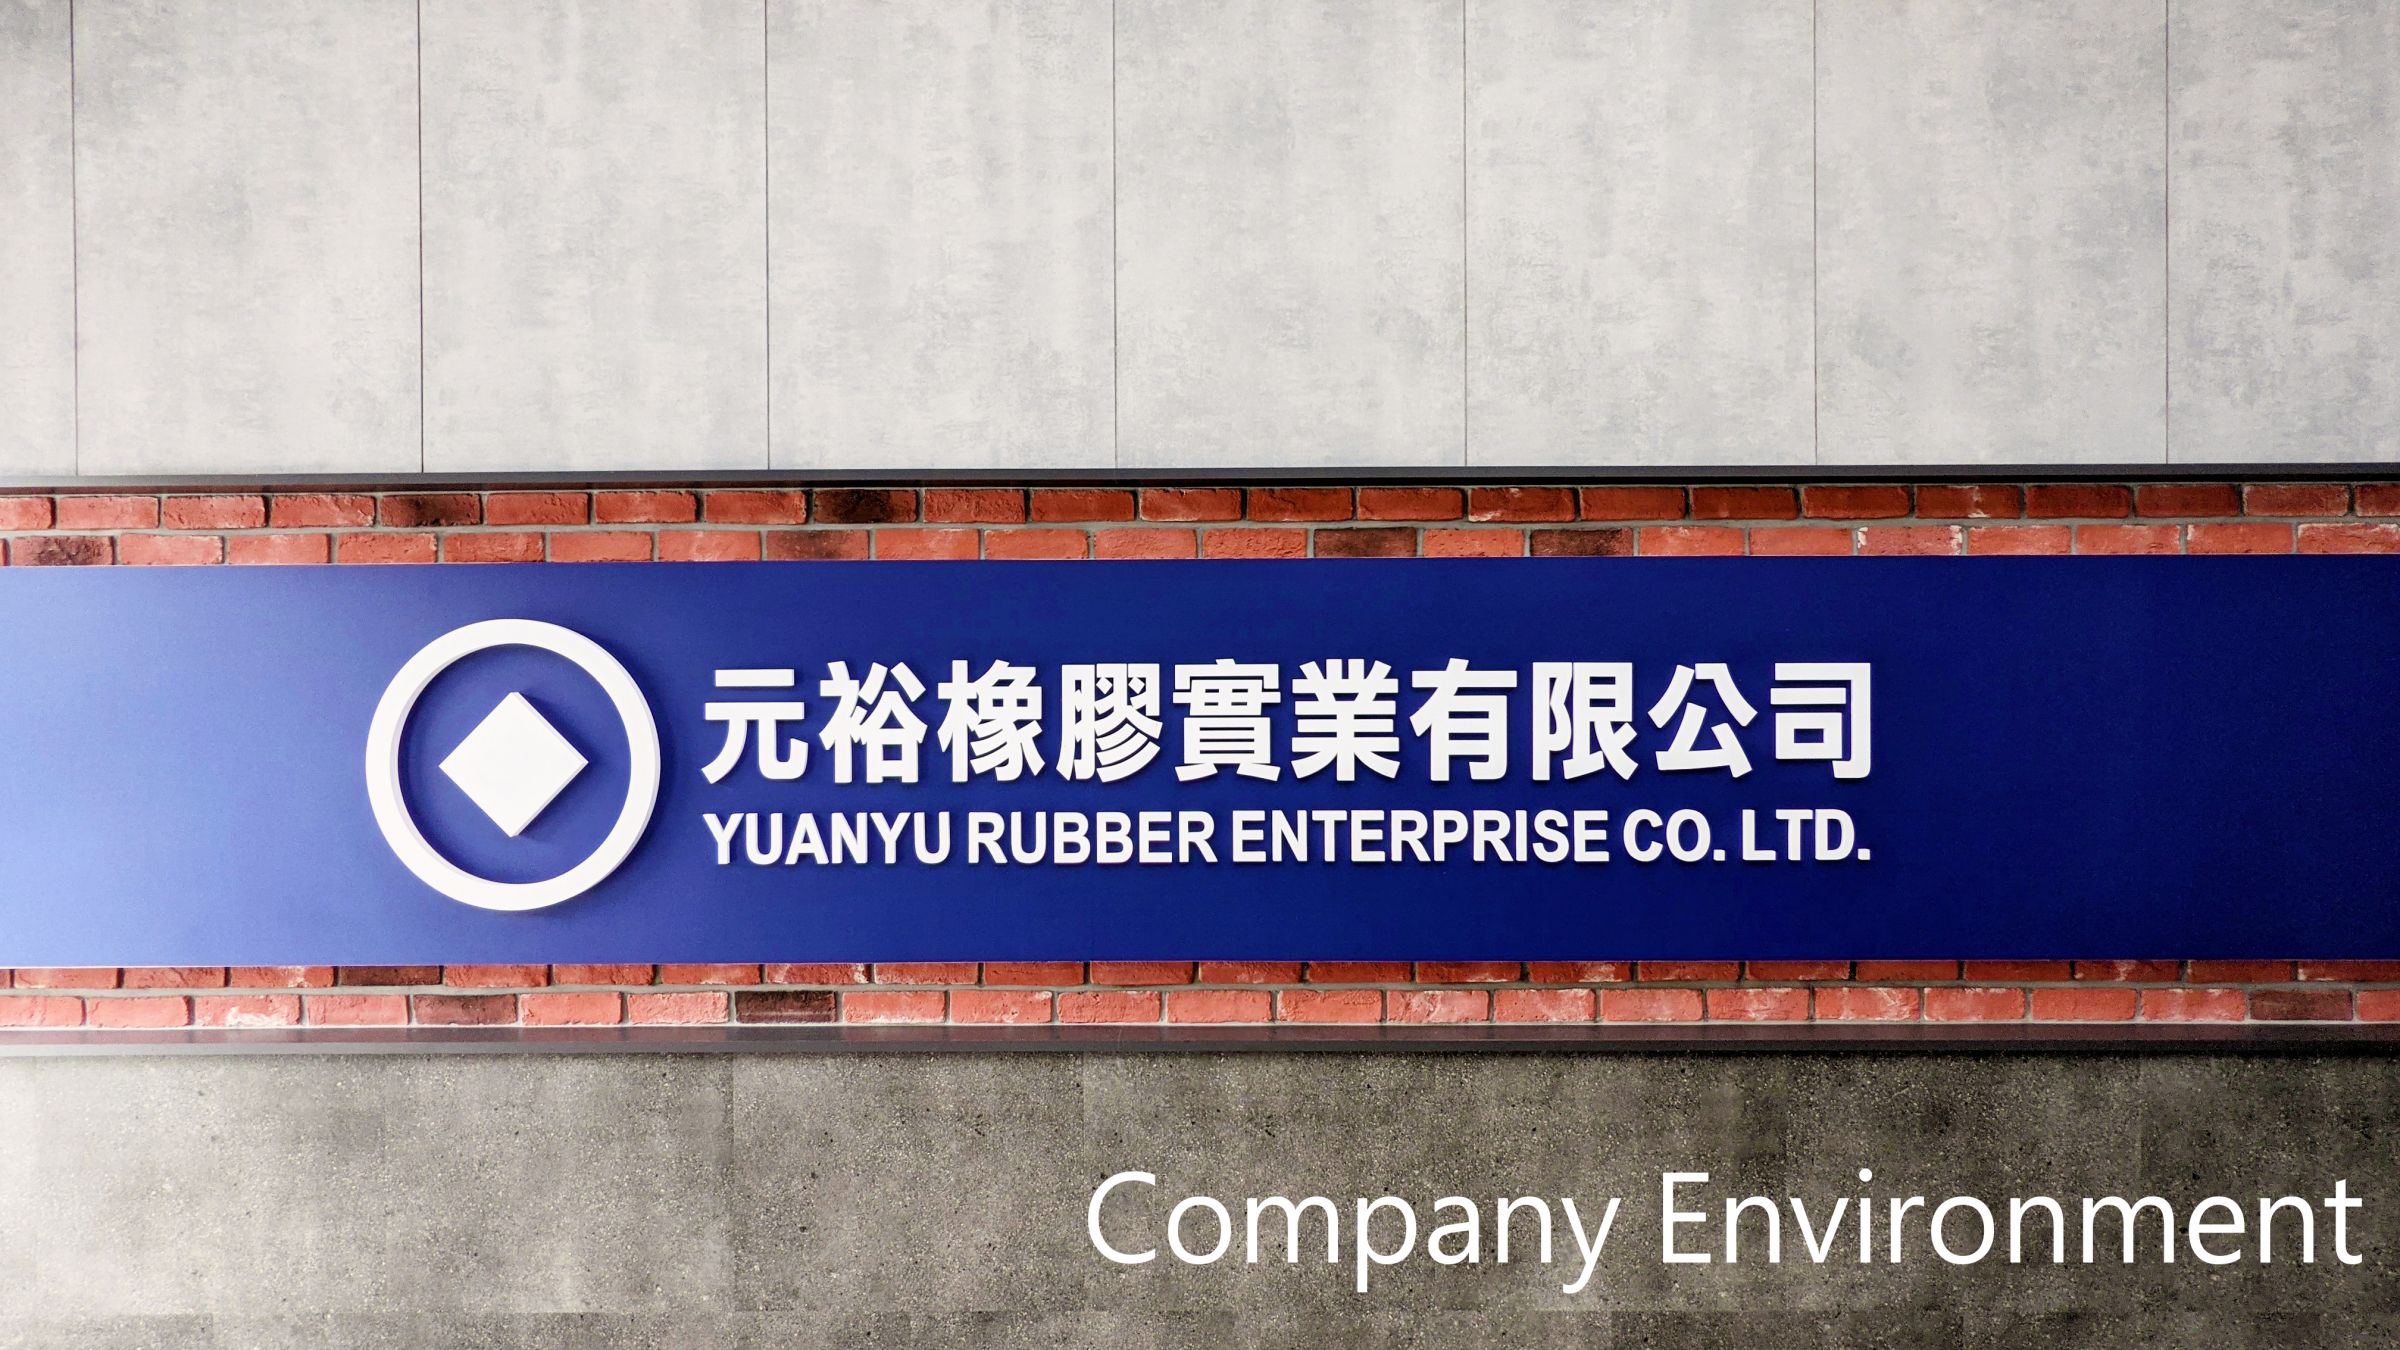 Ambiente da Empresa - Ambiente da Empresa Yuanyu.jpg